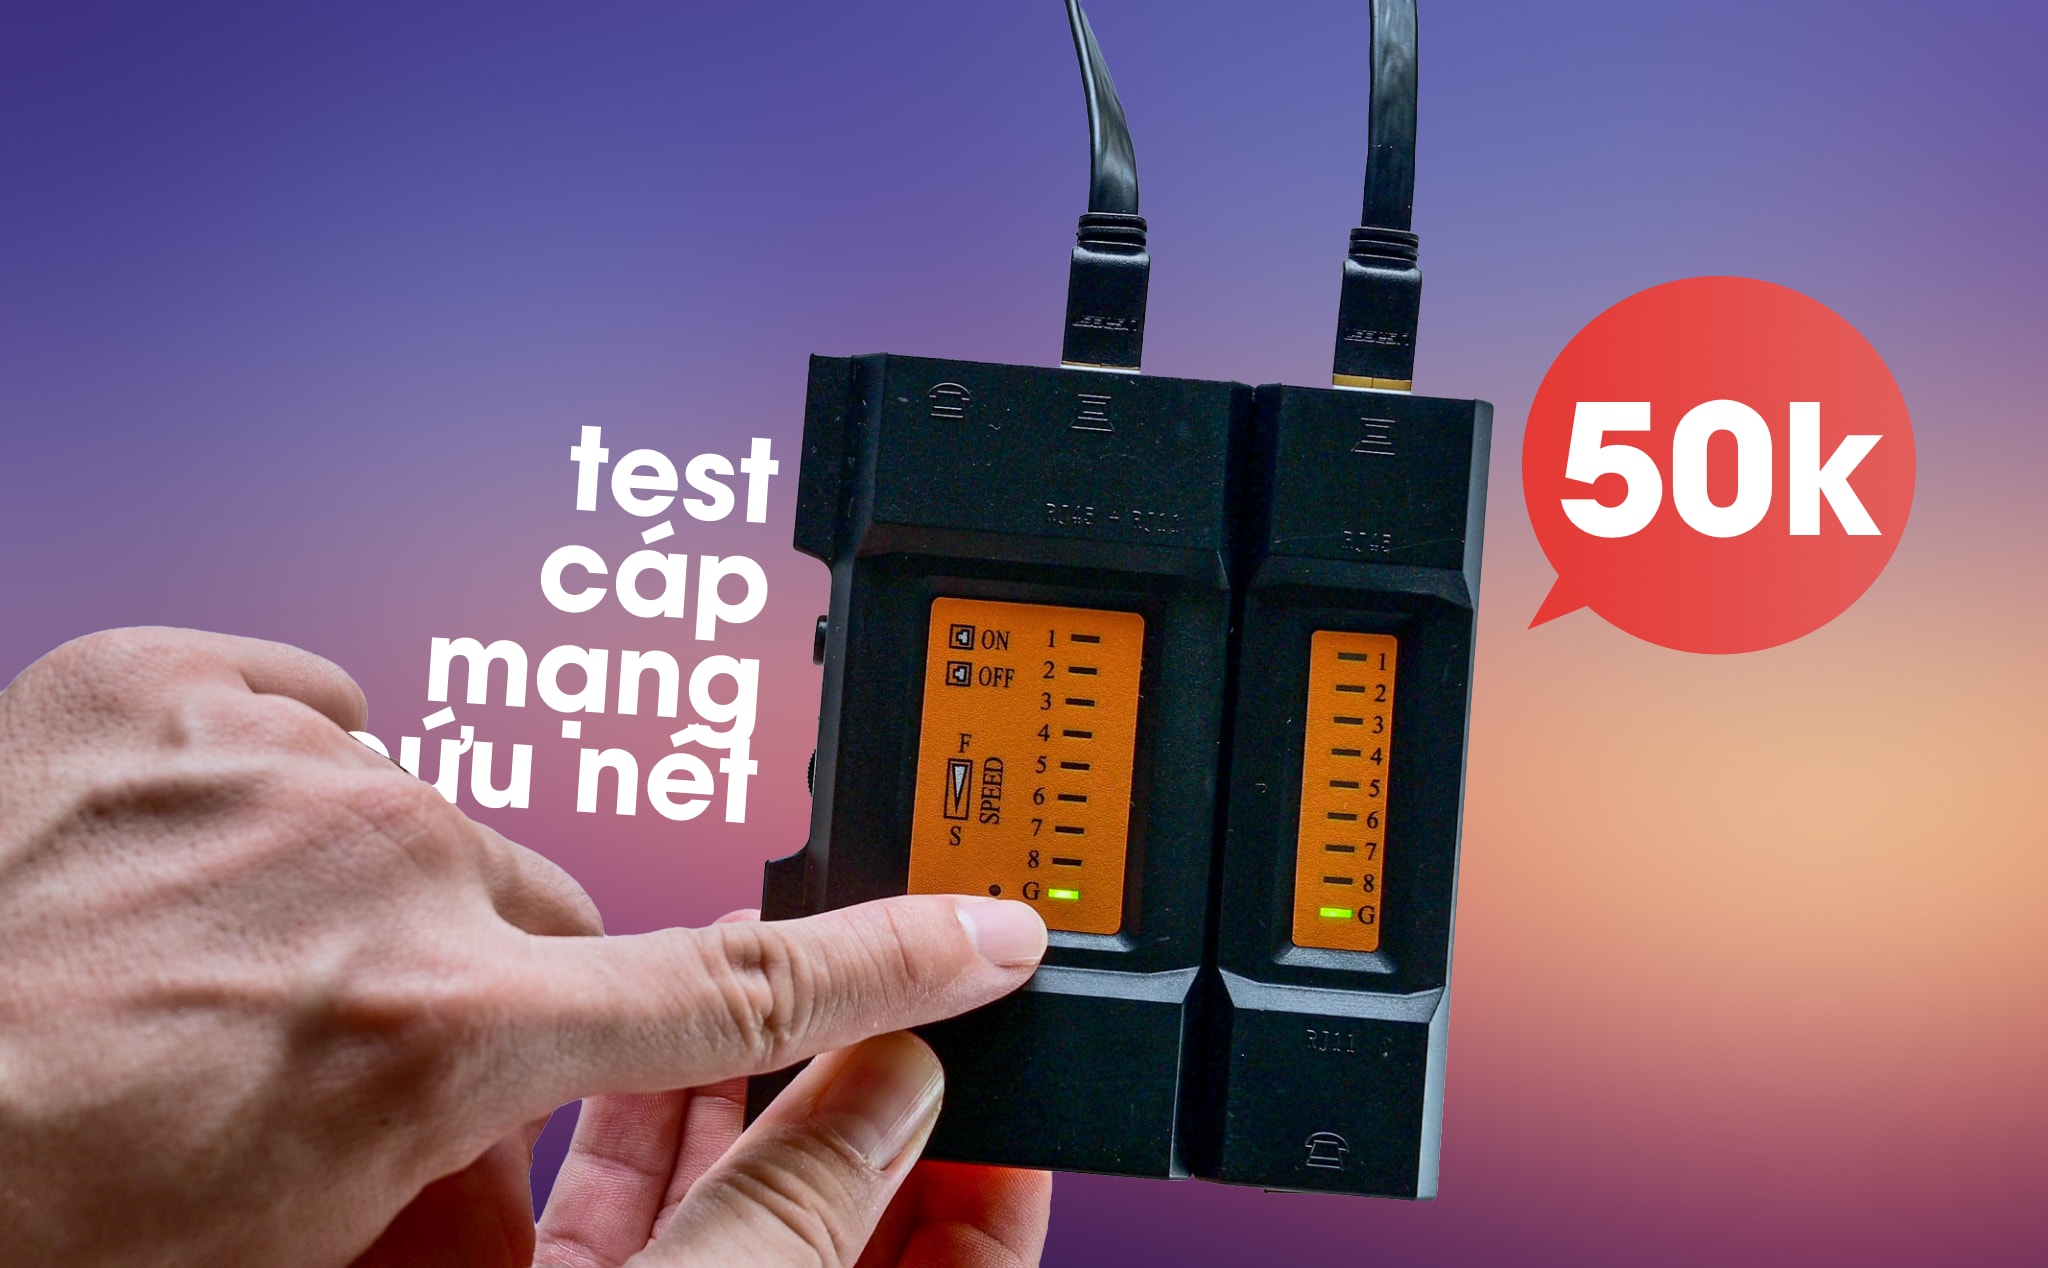 Trên tay hộp Test cáp mạng LAN, cáp điện thoại: giá rẻ 50k, dành cho anh em "cứu net"